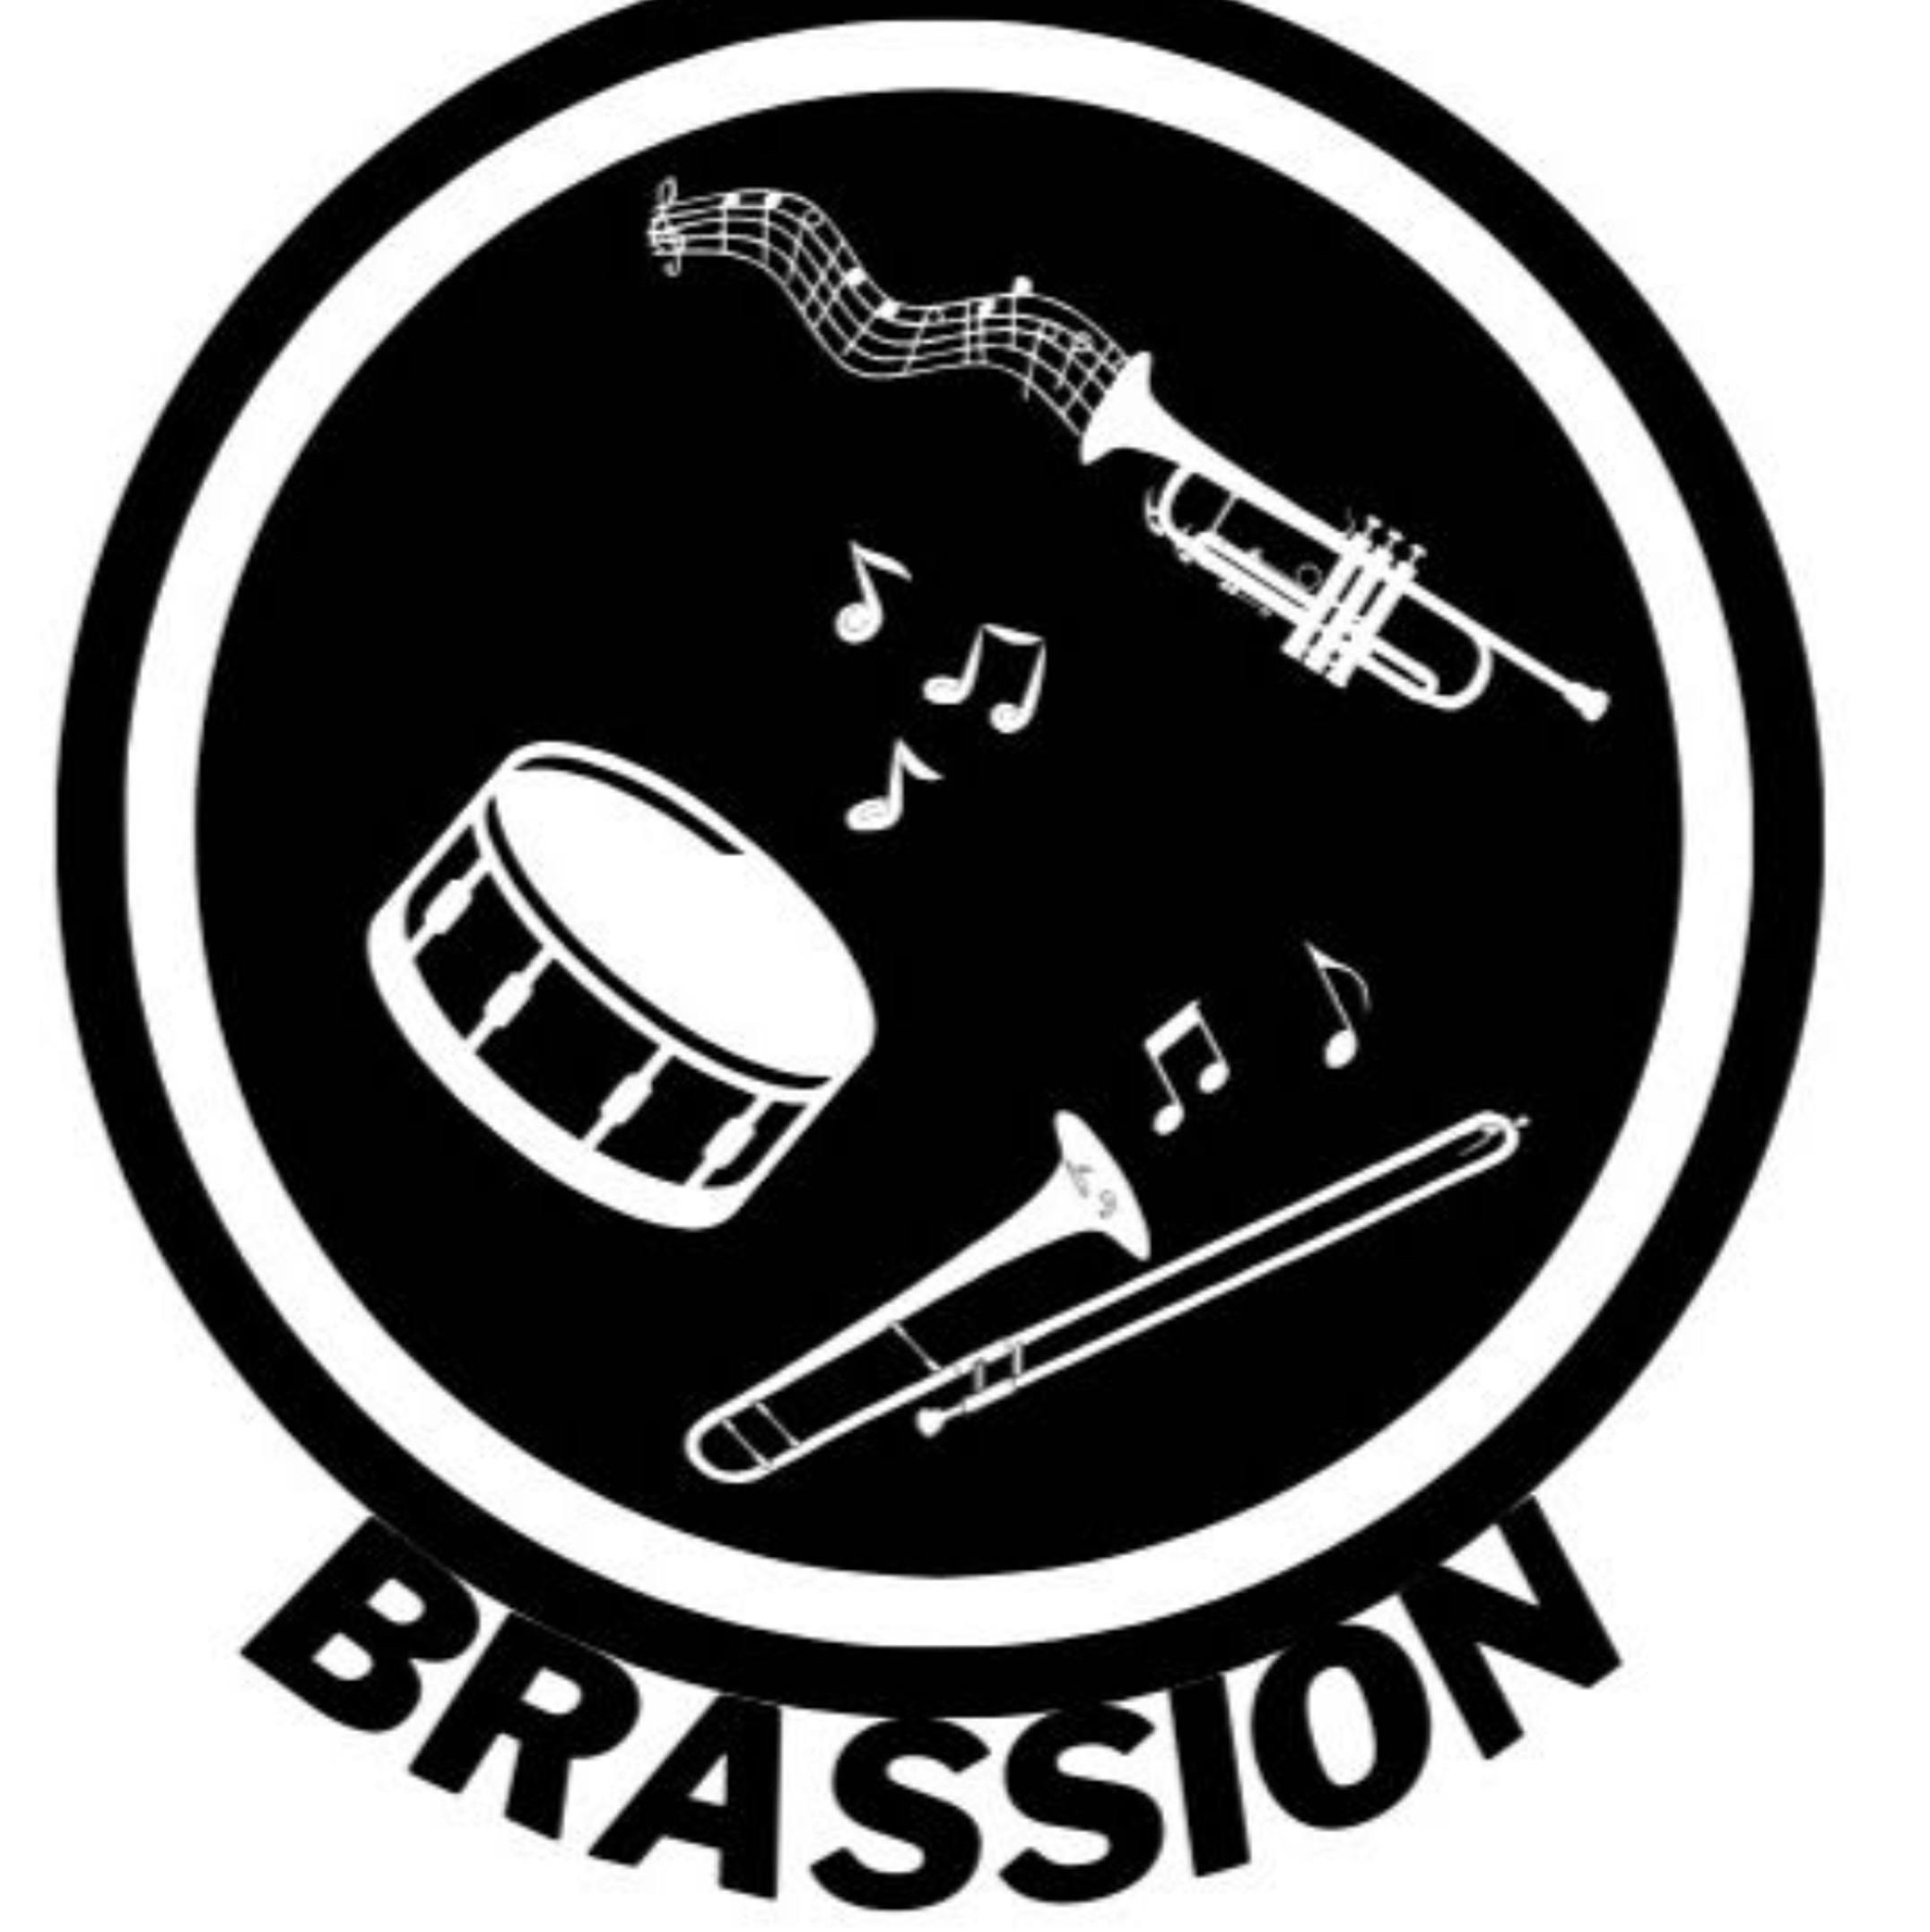 Brassion